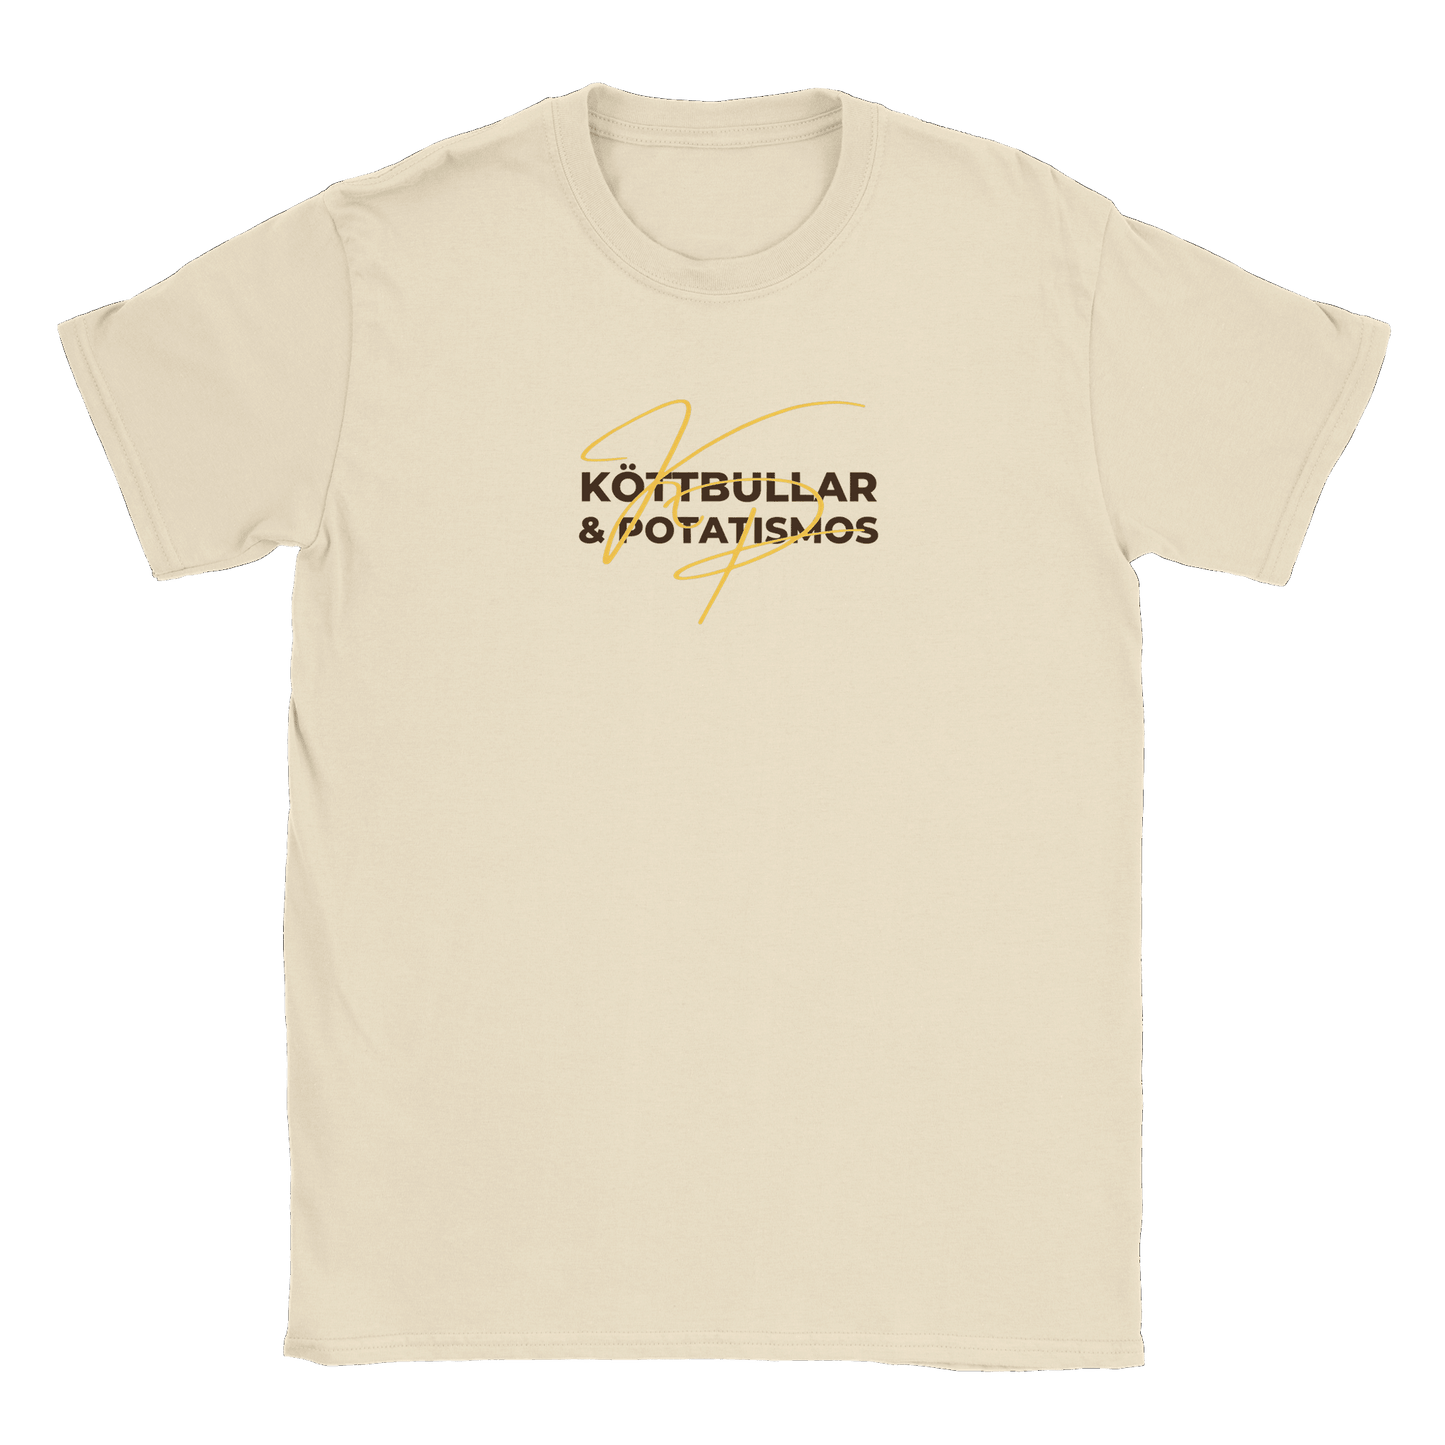 Köttbullar och potatismos - T-shirt Natural